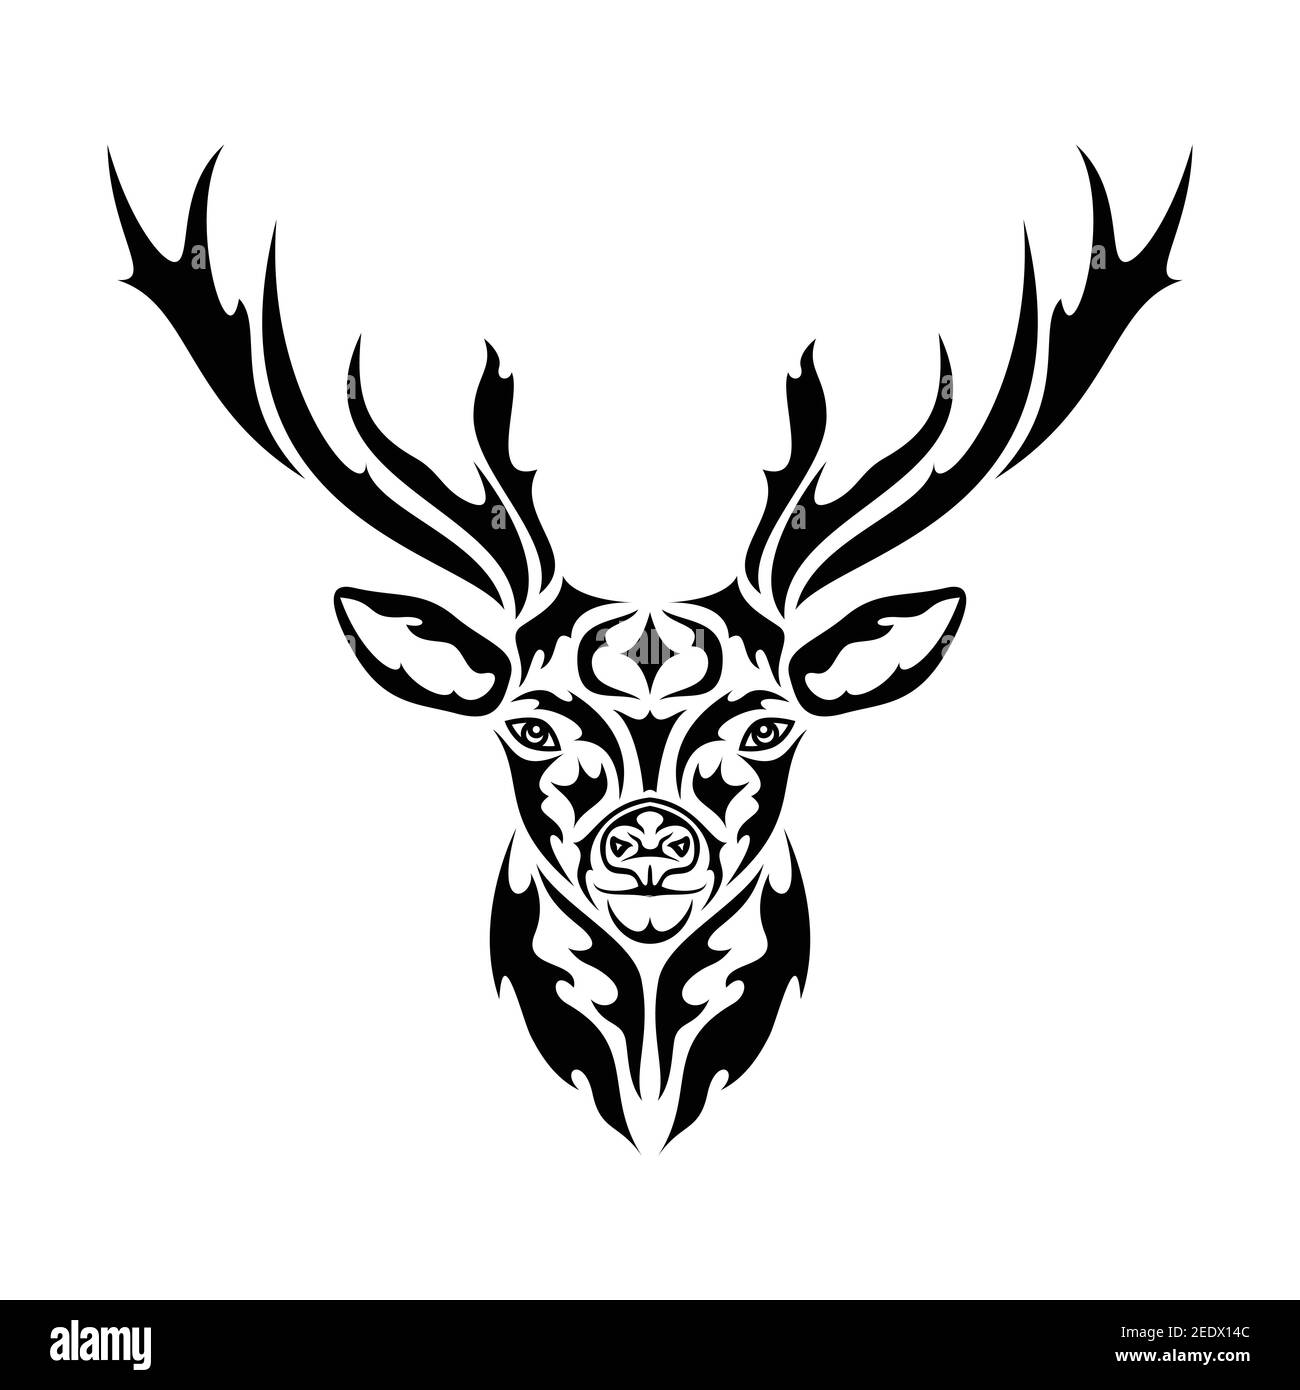 Ritratto astratto disegnato a mano di un cervo. Illustrazione grafica vettoriale stilizzata per tatuaggio, logo, decorazioni da parete, stampa di T-shirt o outwear. Questo disegno Illustrazione Vettoriale